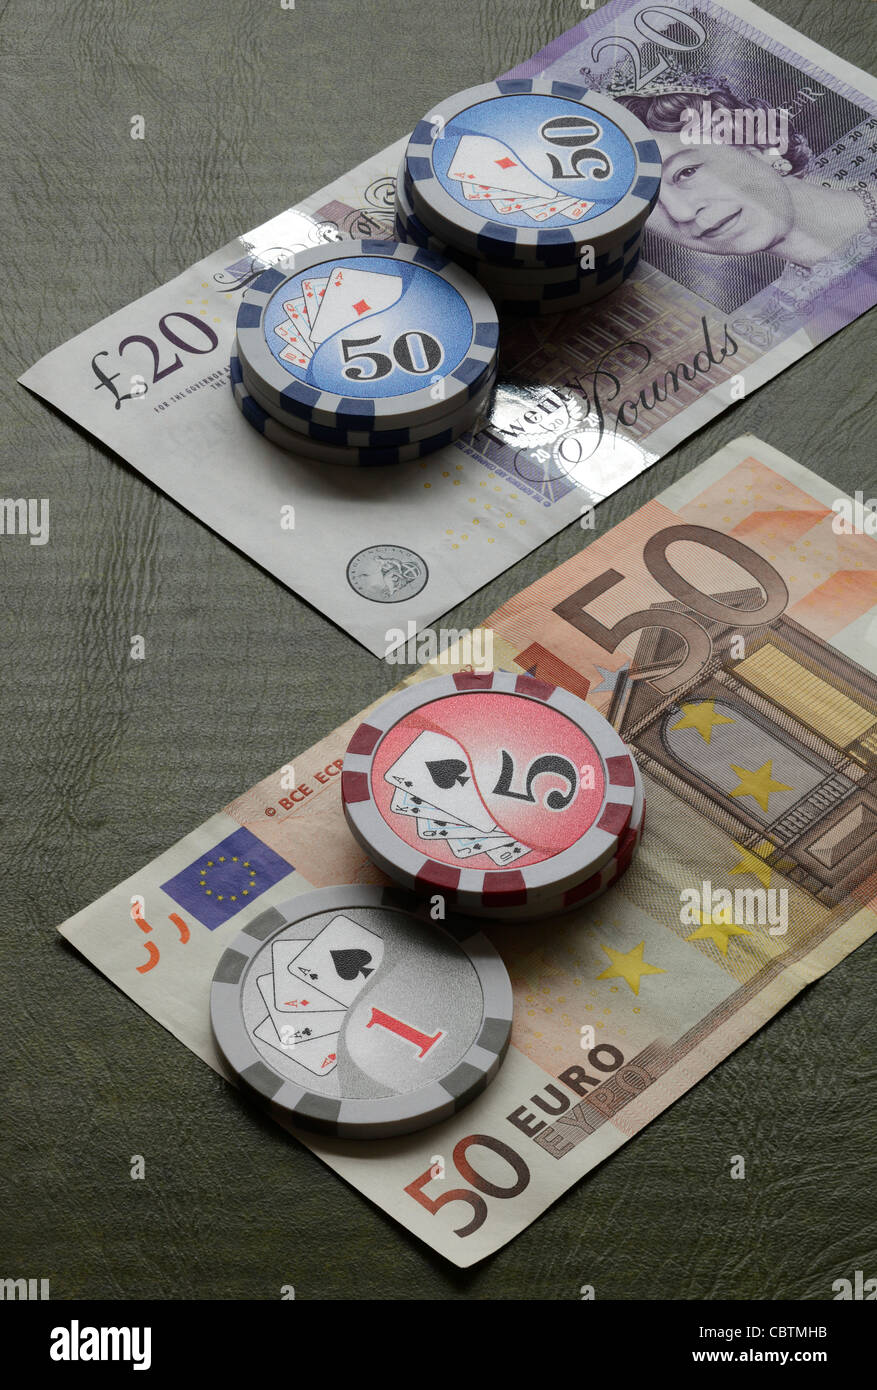 Gambling on Pound vs. Euro Stock Photo